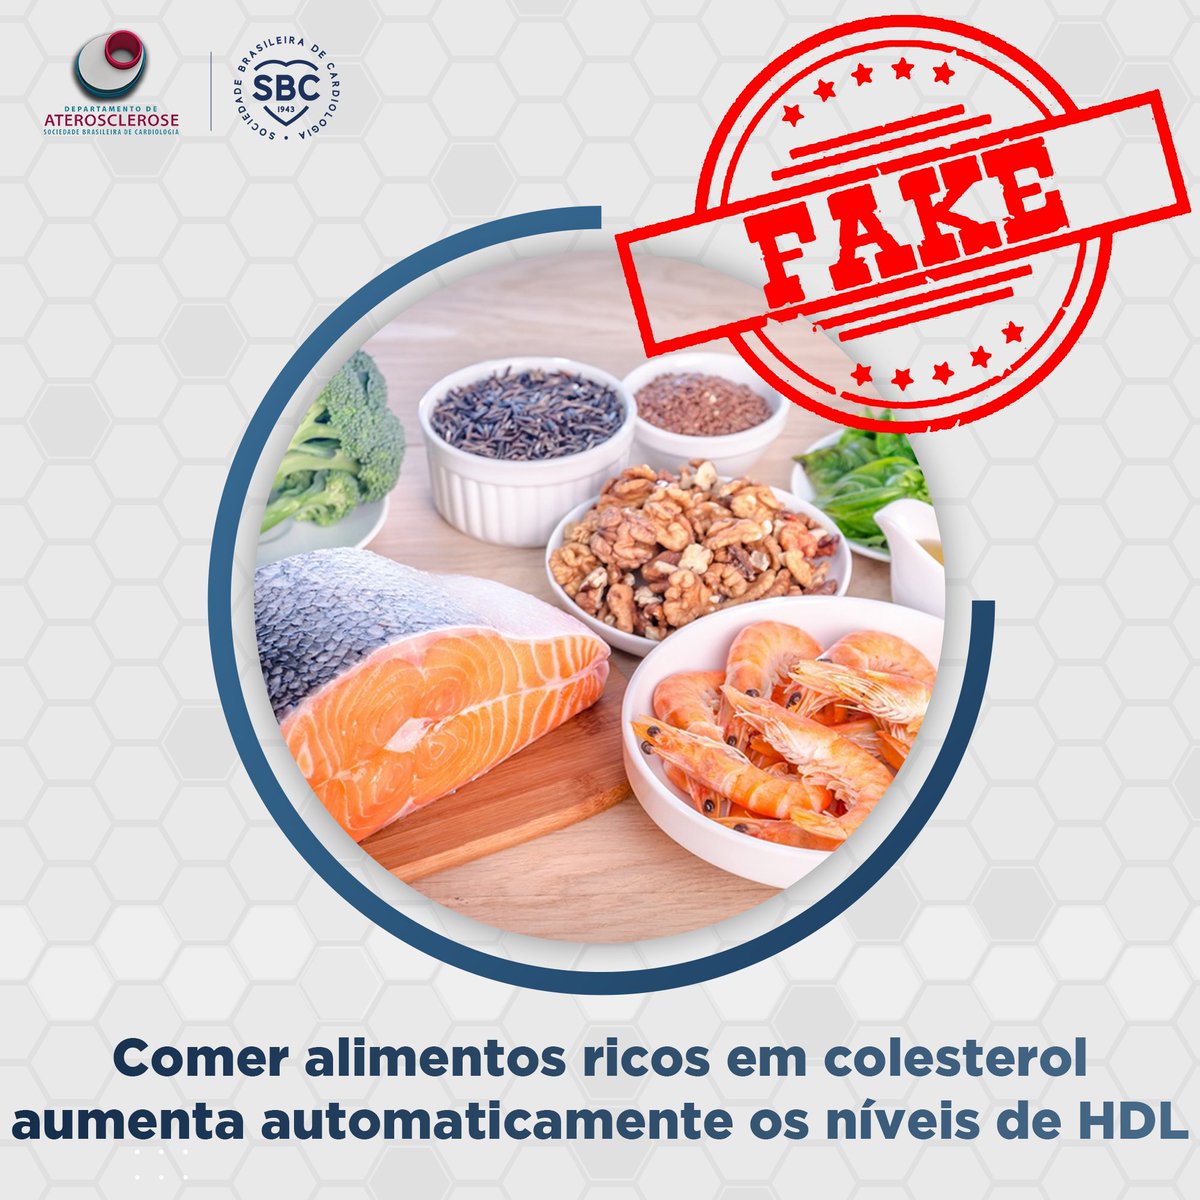 FAKE Essa afirmação é um equívoco comum. Embora a dieta desempenhe um papel na saúde cardiovascular, não é tão simples quanto comer alimentos ricos em colesterol para aumentar diretamente os níveis de HDL.